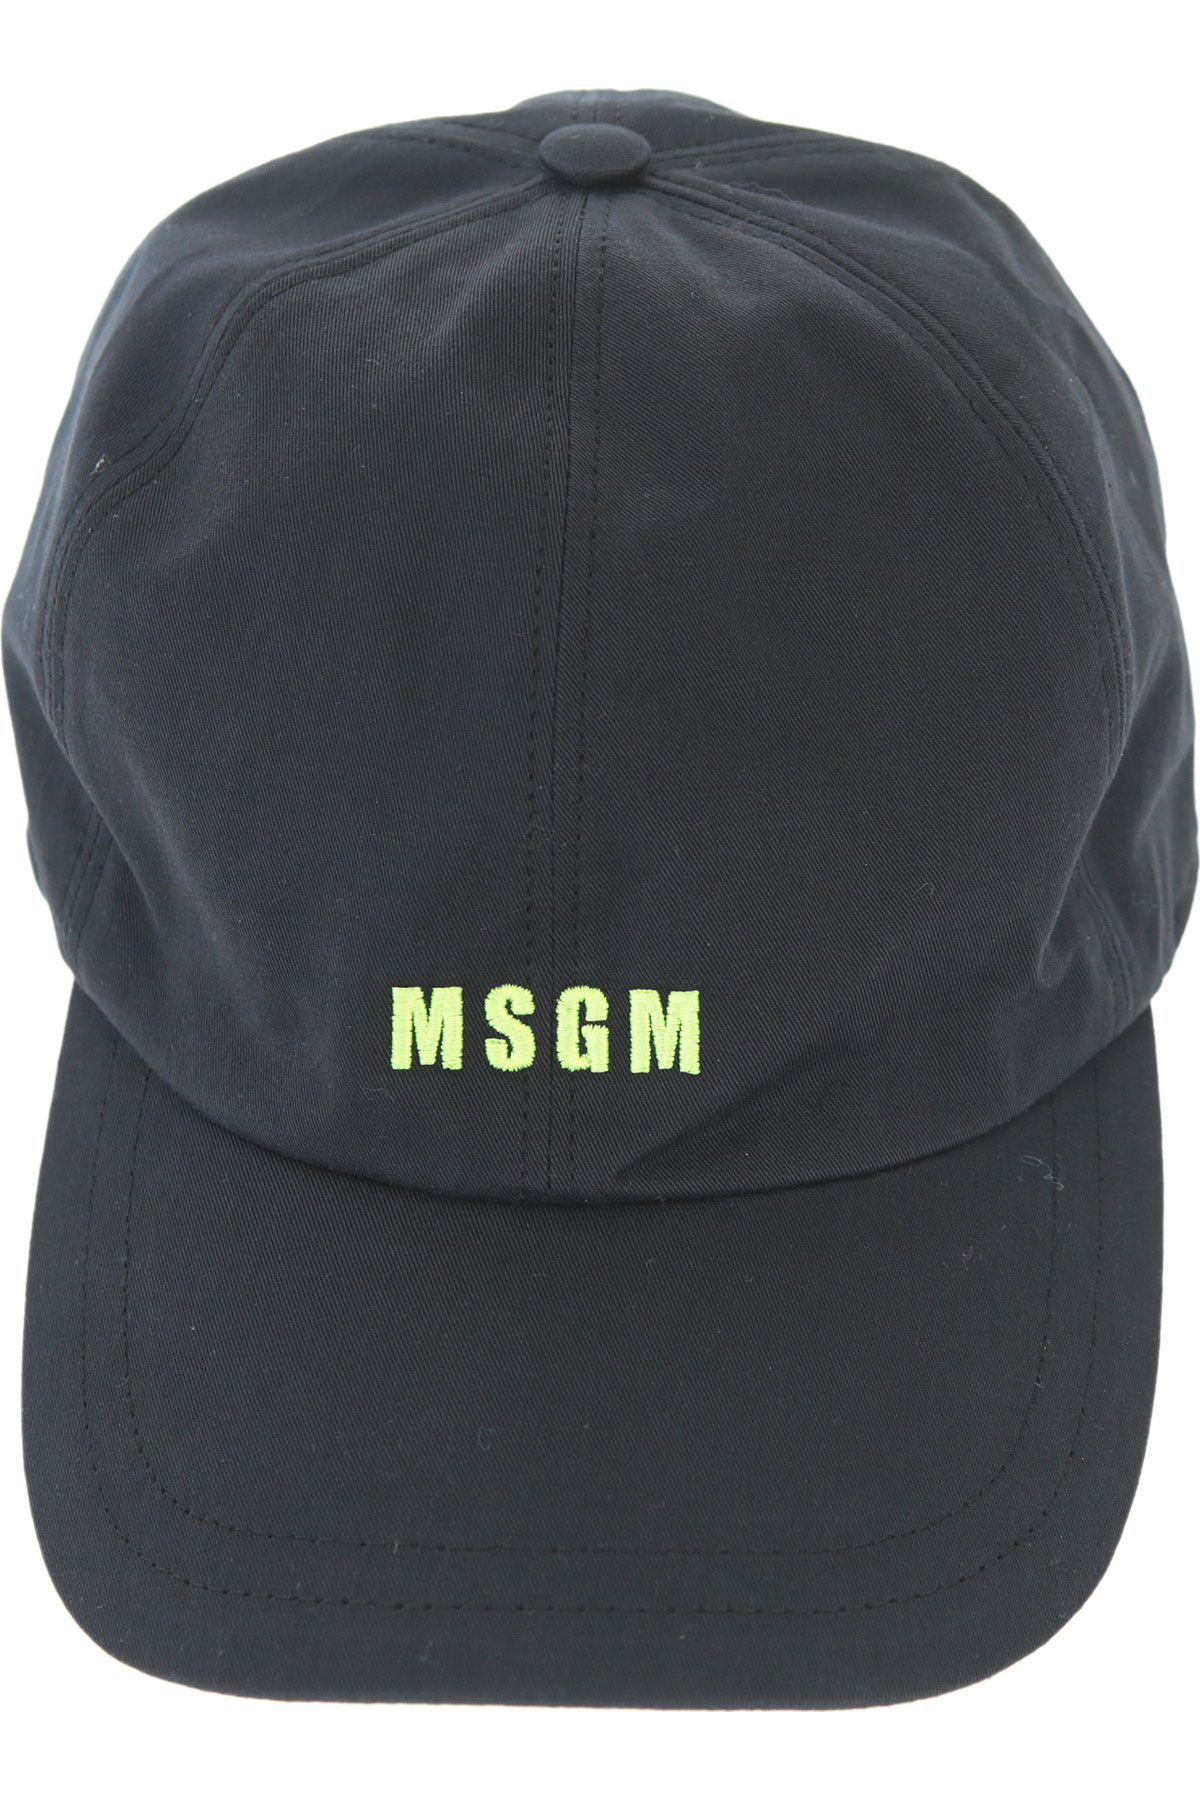 MSGM Abbigliamento Uomo TB6476